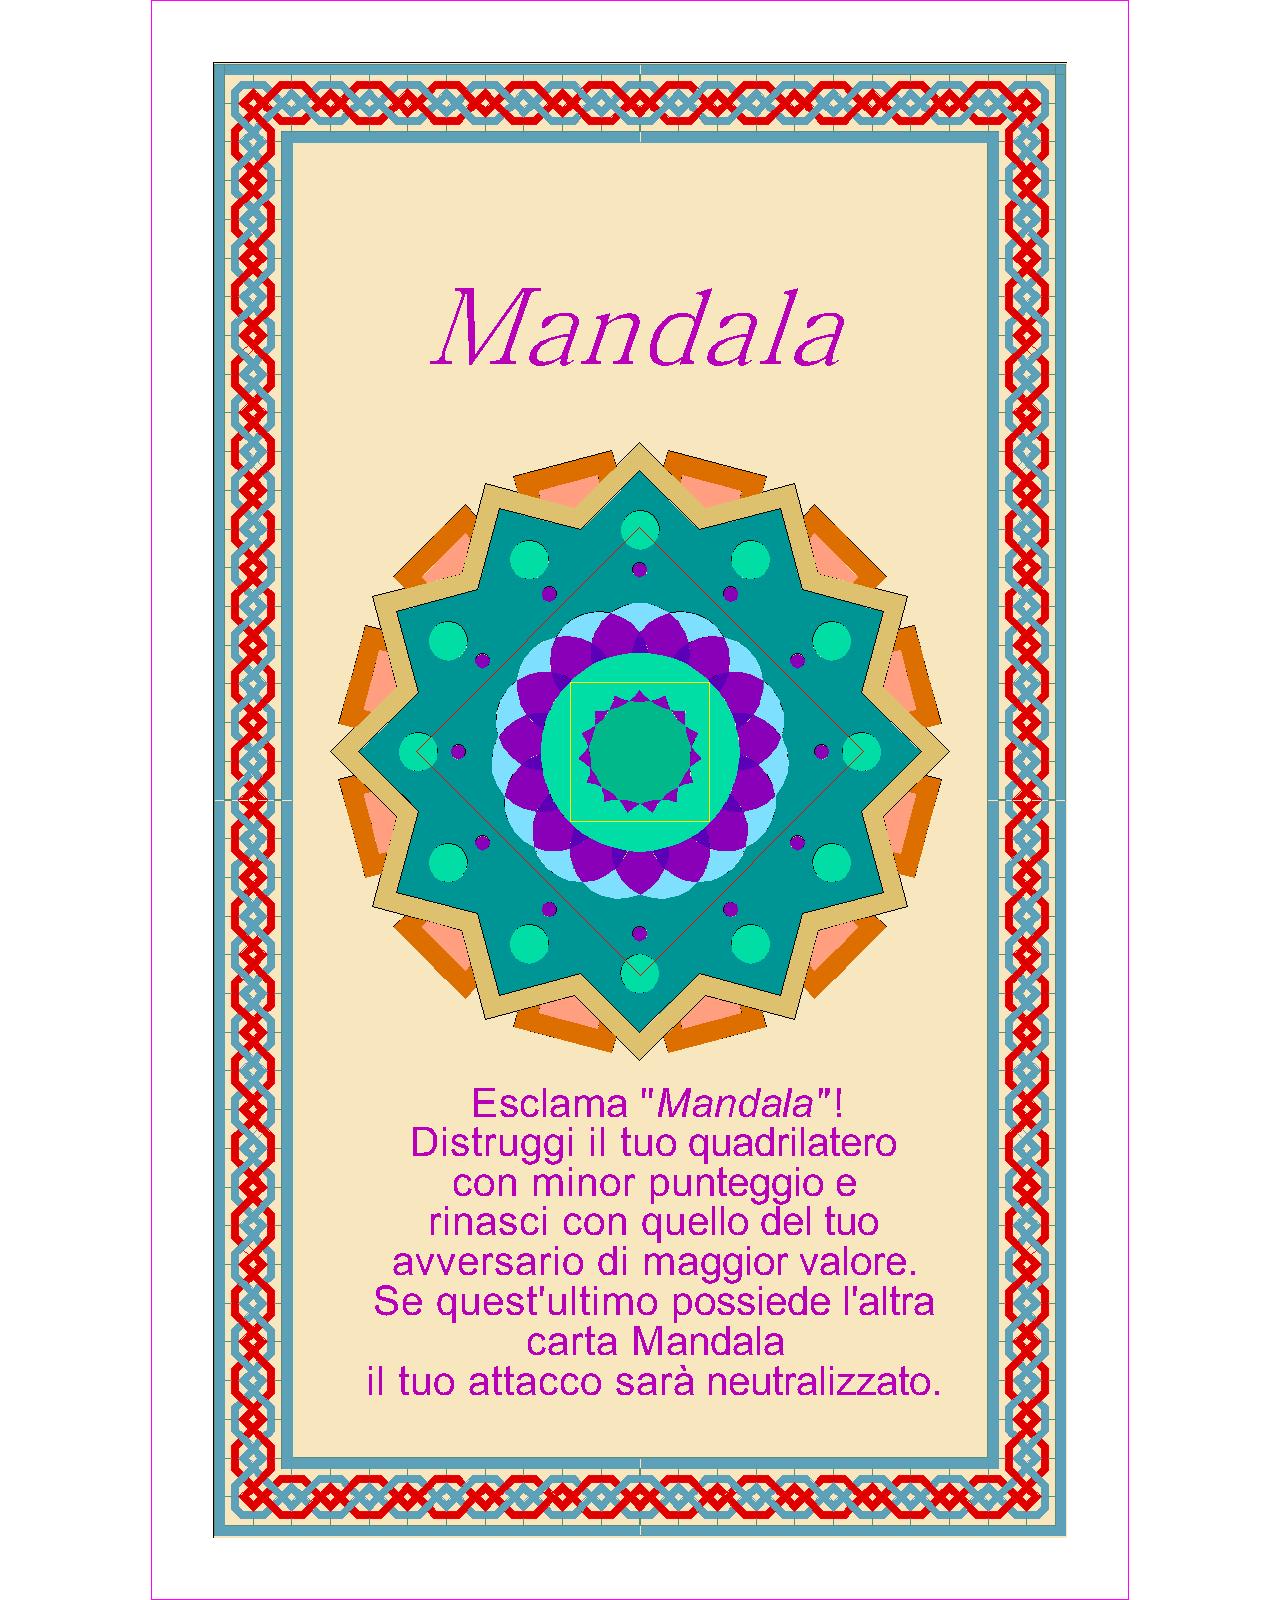 014. Mandala a-Model (Coach M.C. Petroli)